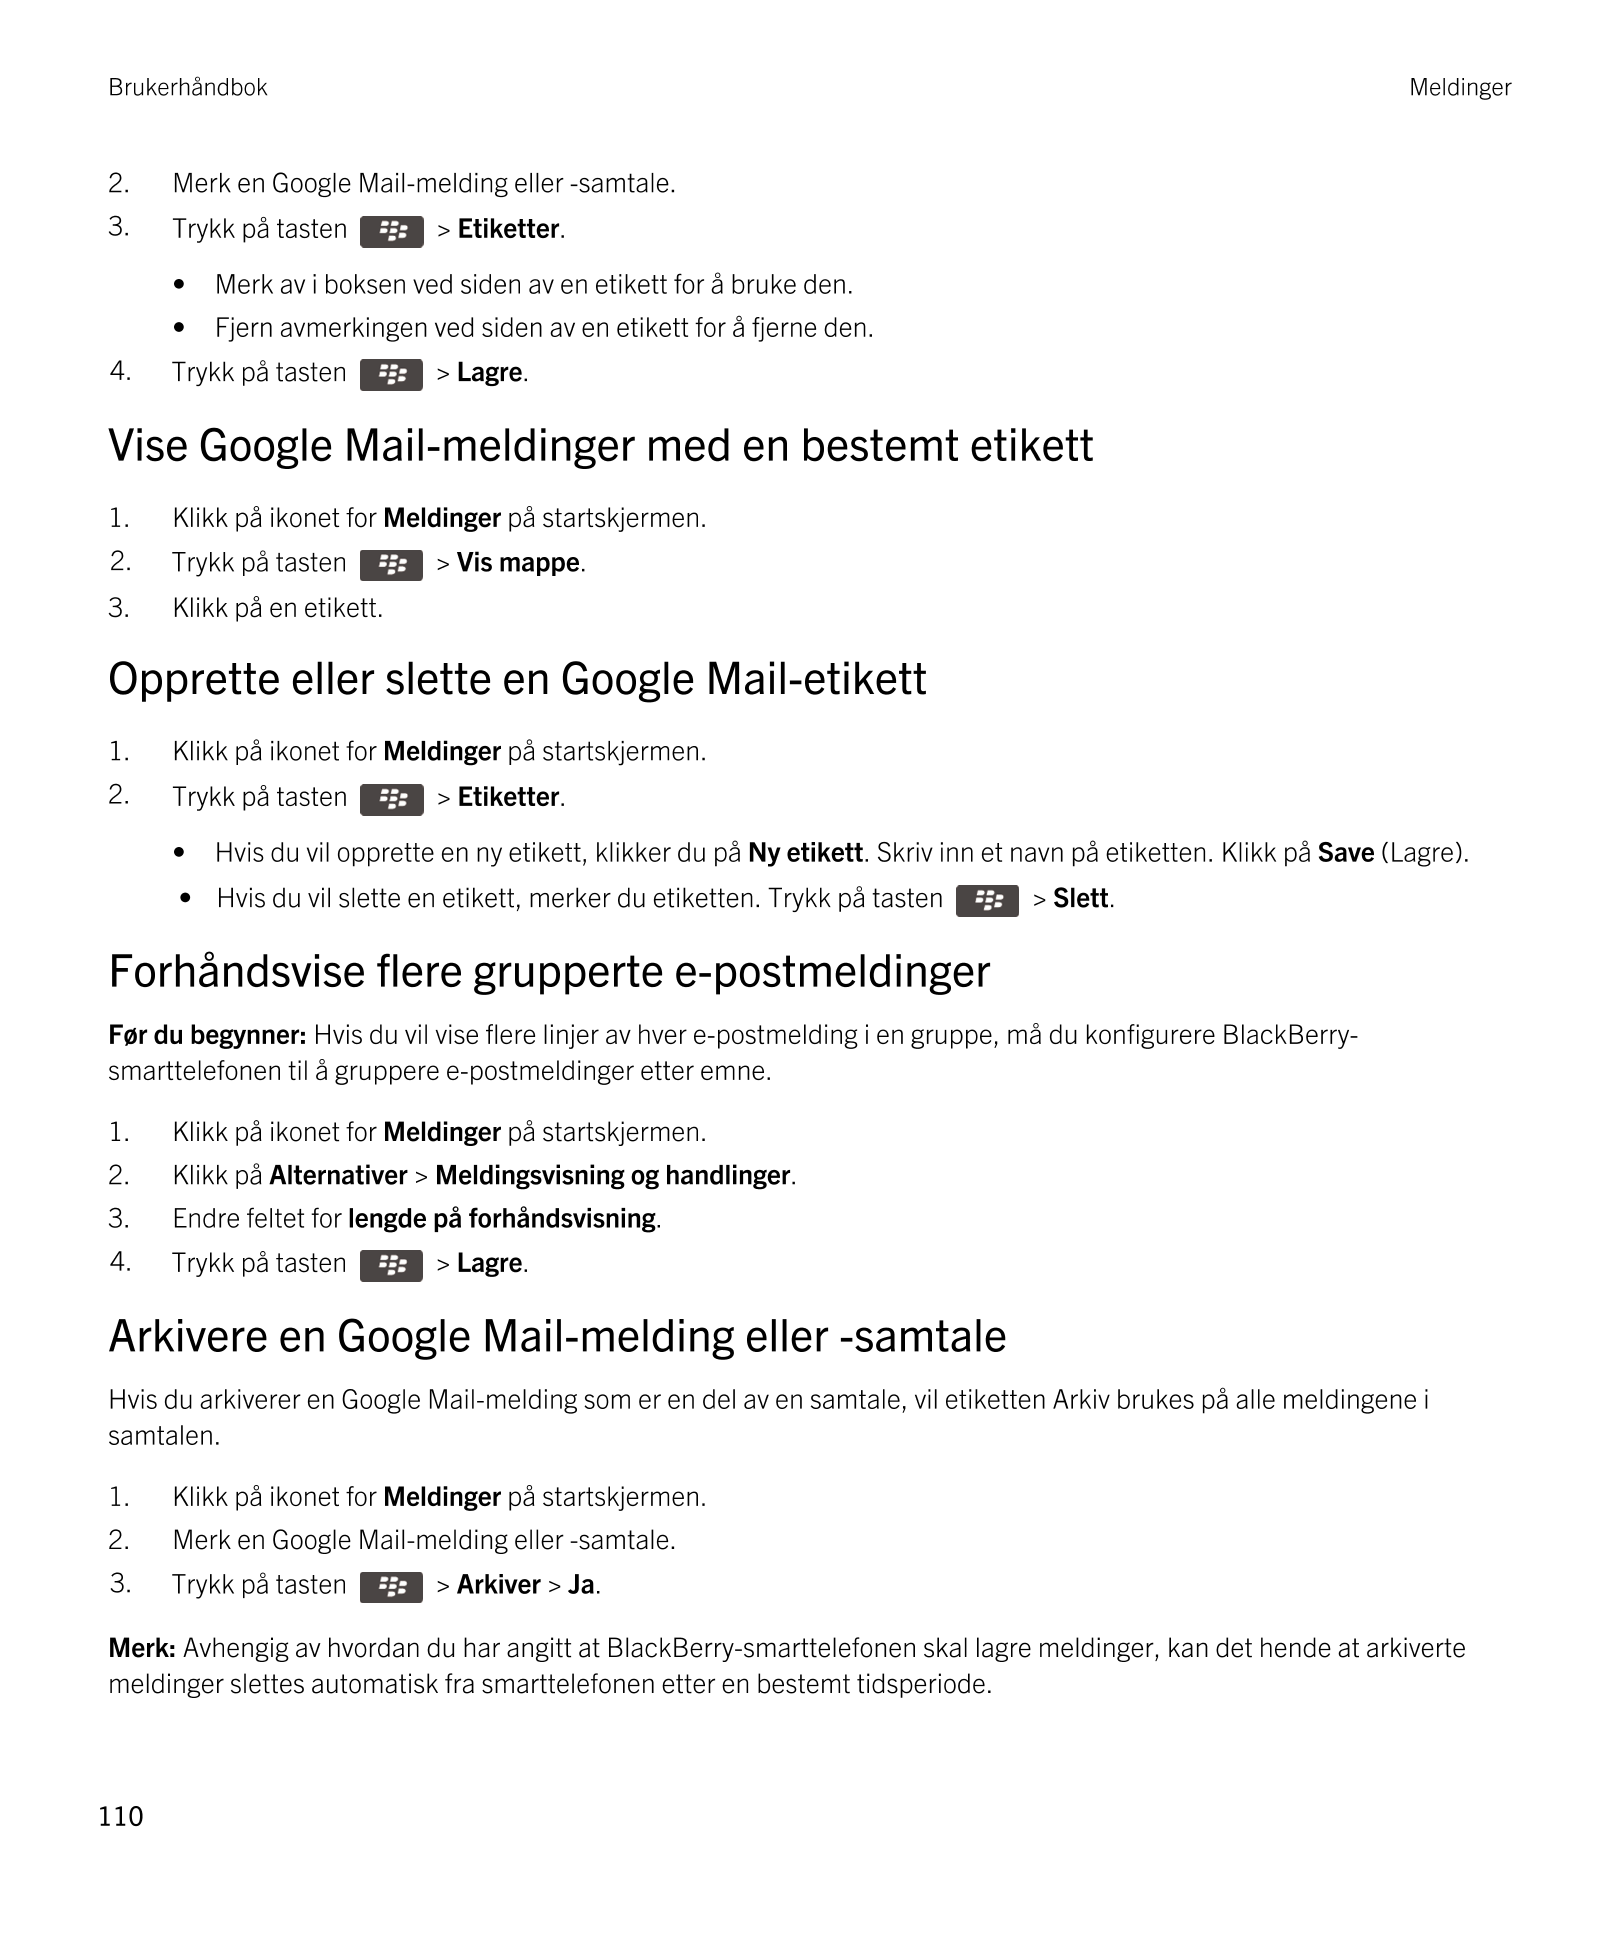 Brukerhåndbok Meldinger
2. Merk en  Google Mail-melding eller -samtale.
3. Trykk på tasten    >  Etiketter.
• Merk av i boksen v